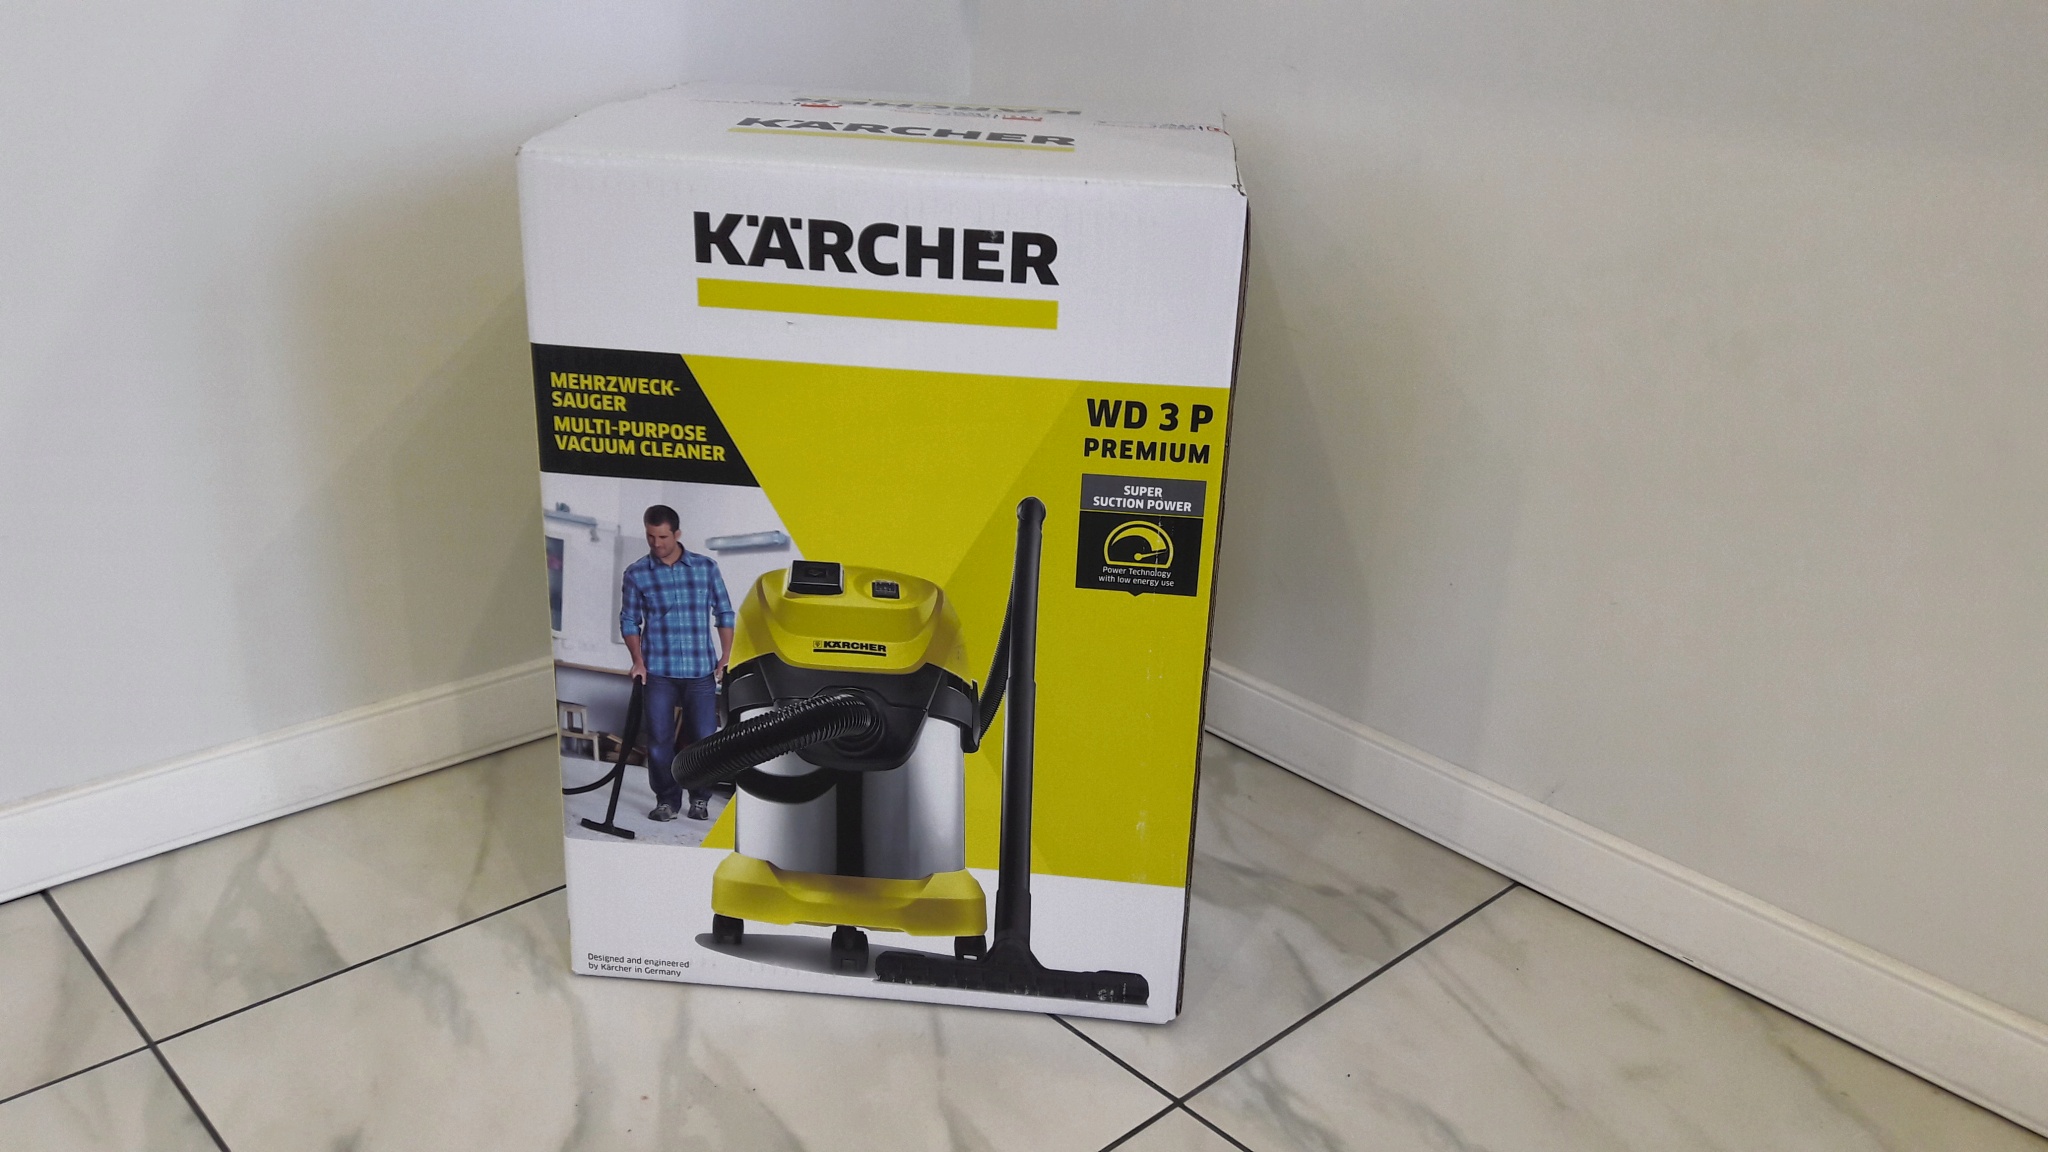 Karcher WD 3p комплектация. Karcher WD 3 P Premium. Karcher wd3 p Premium габариты. Karcher WD 3 P Premium аксессуары. Karcher wd 3 premium купить